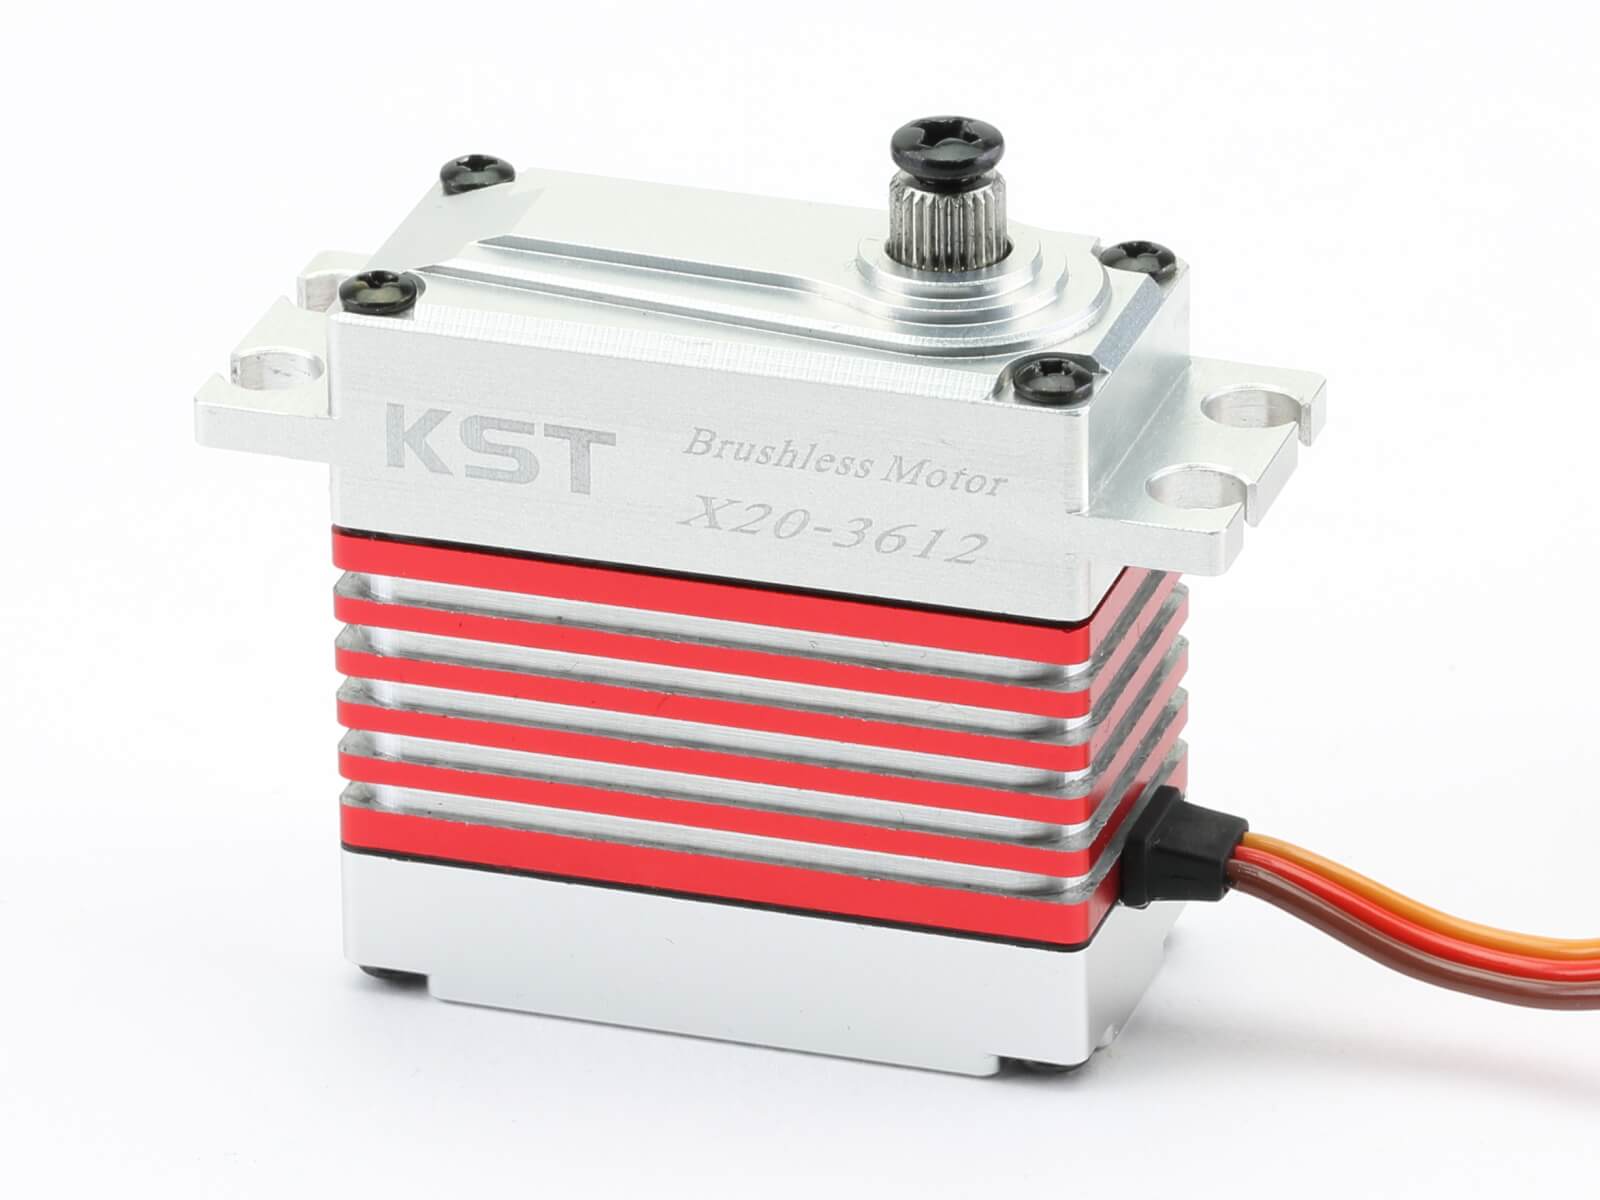 KST X20-3612 Digital Brushless Servo HV 8.4V 0.11s 40kg.cm 555oz.in